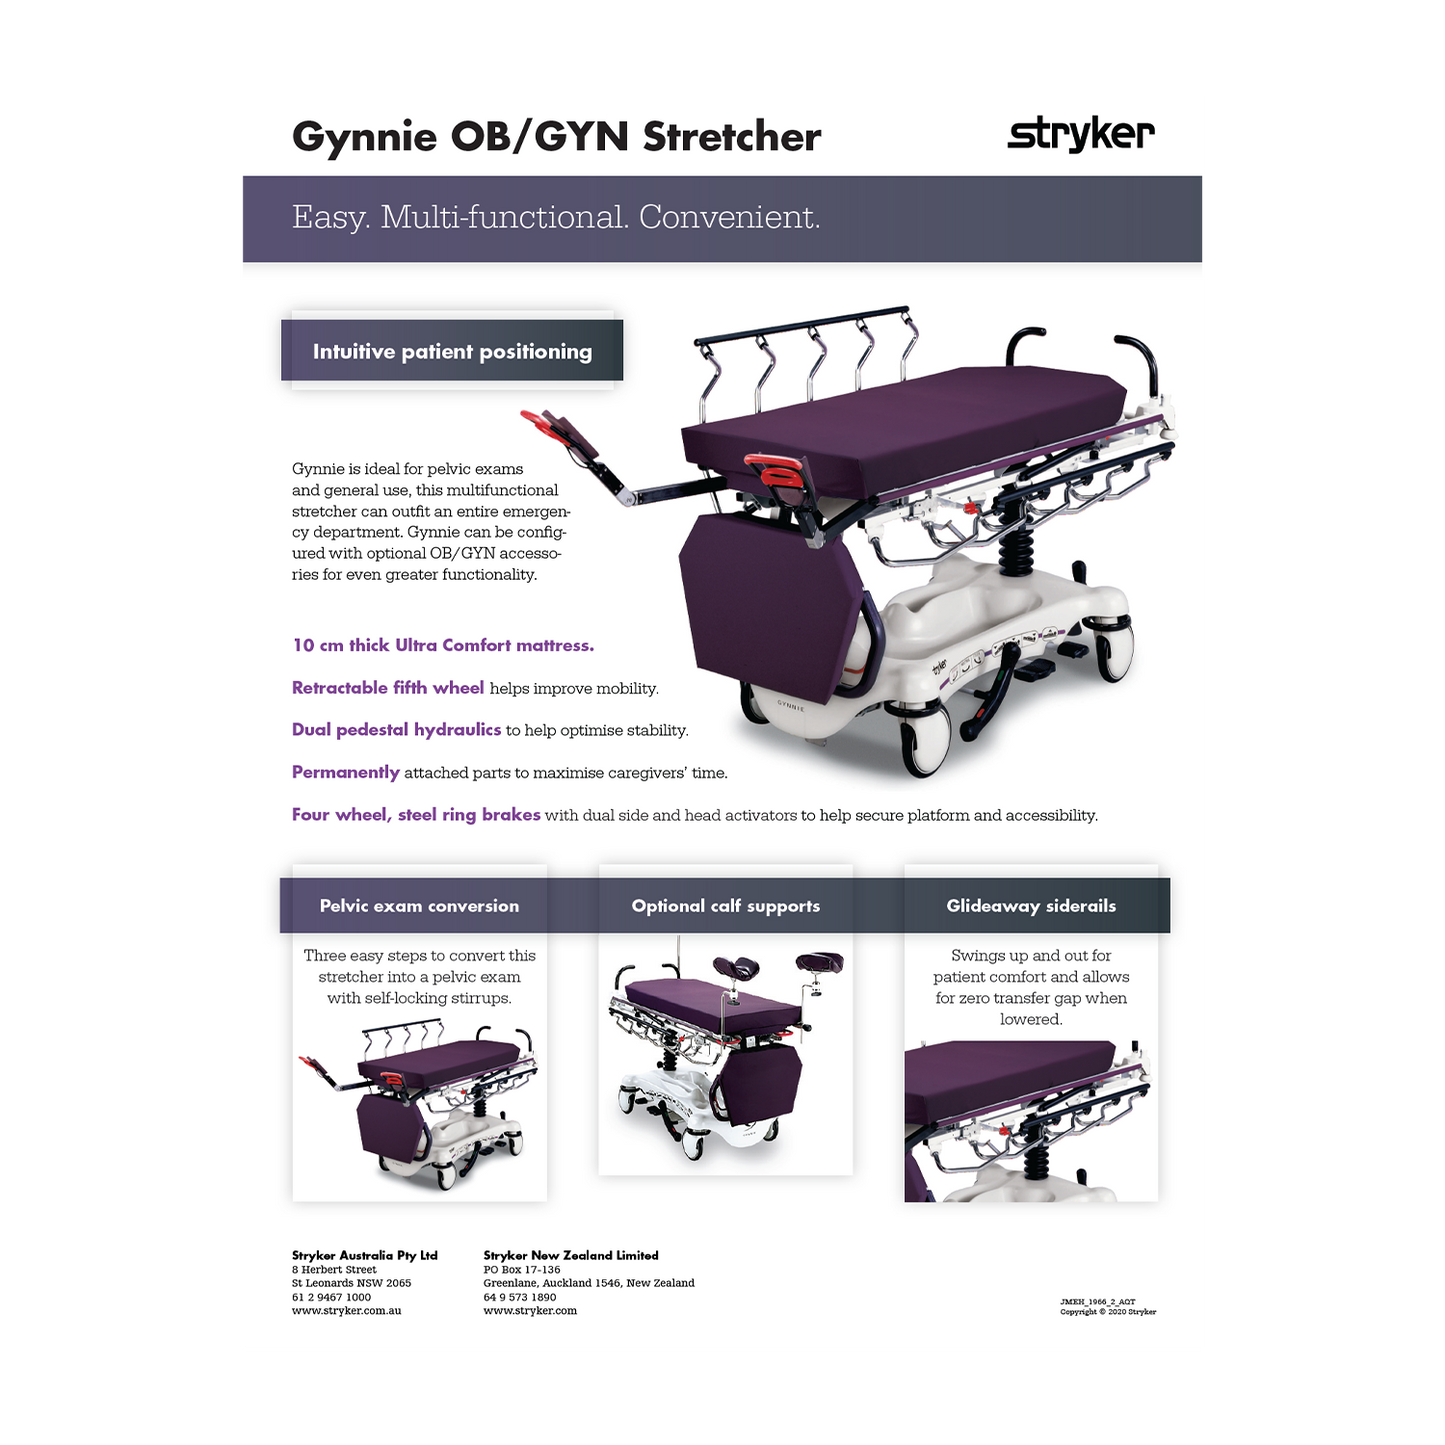 Stryker 1061 Gynnie OB/GYN Stretcher